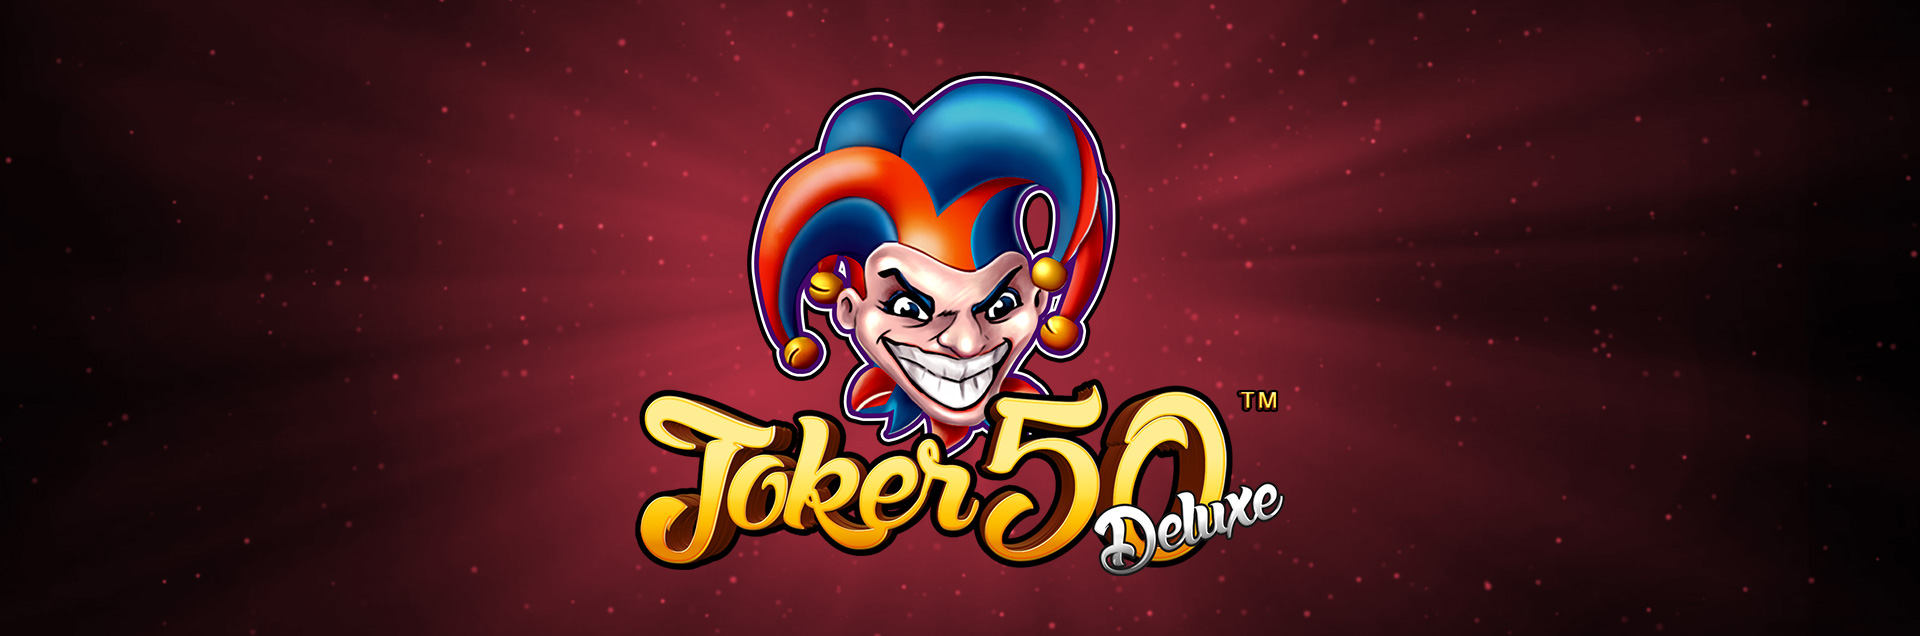 Joker 50 Deluxe header games